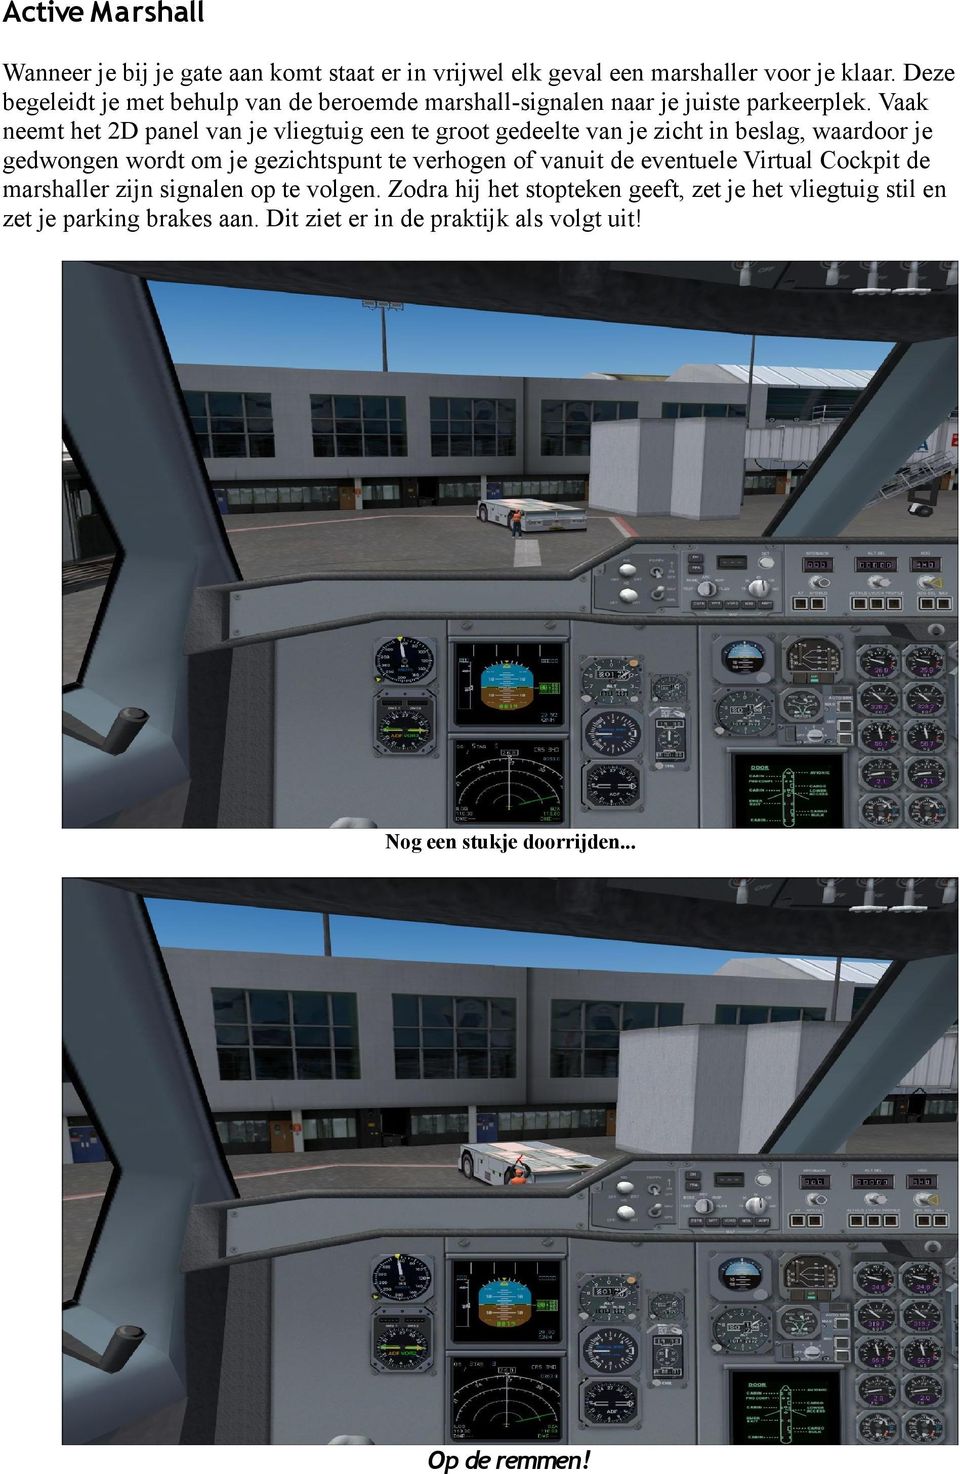 Vaak neemt het 2D panel van je vliegtuig een te groot gedeelte van je zicht in beslag, waardoor je gedwongen wordt om je gezichtspunt te verhogen of